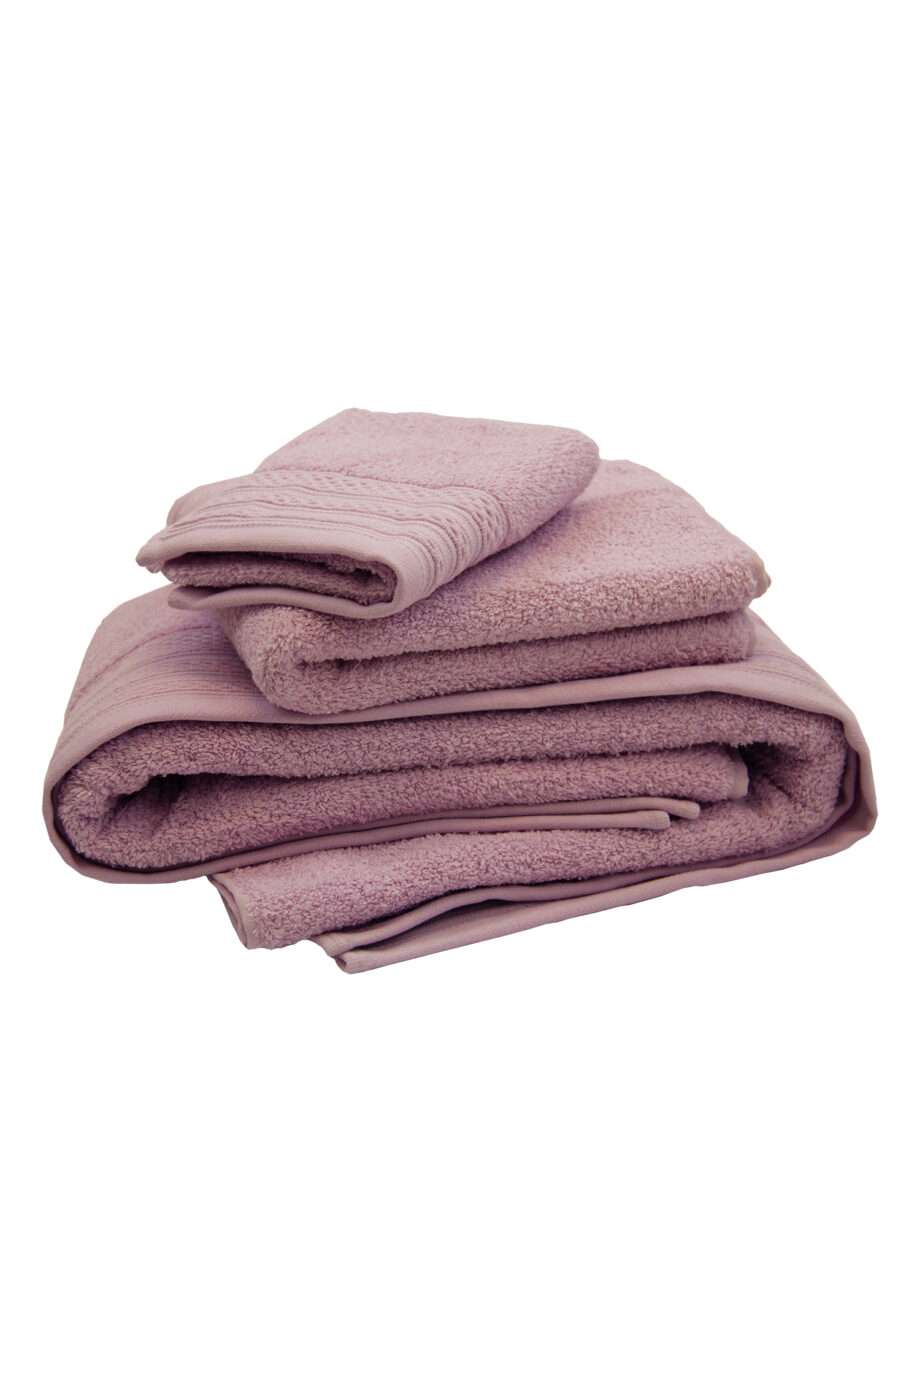 cancun violet woven cotton towel set